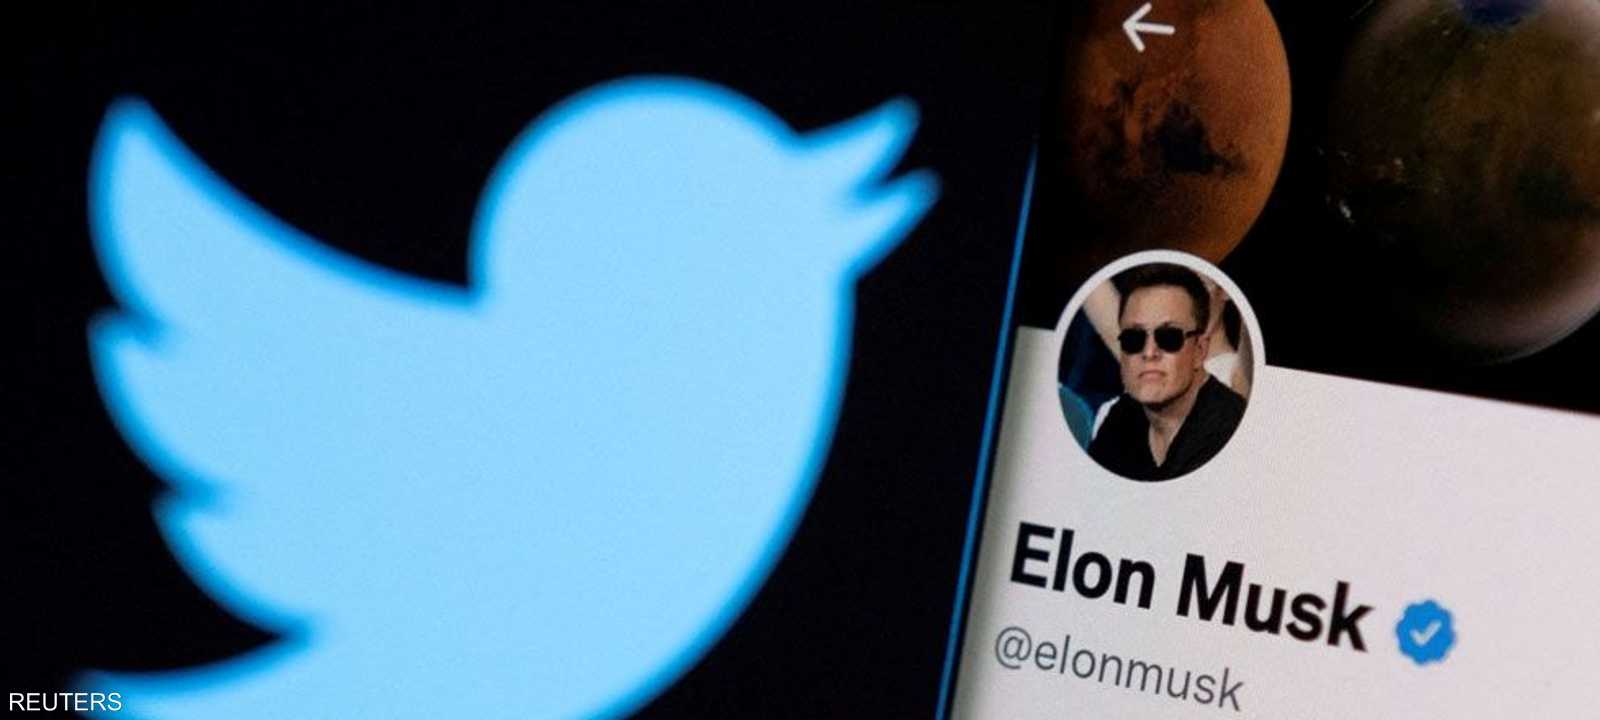 أعلنت "تويتر" قبول عرض إيلون ماسك، لشراء المنصة